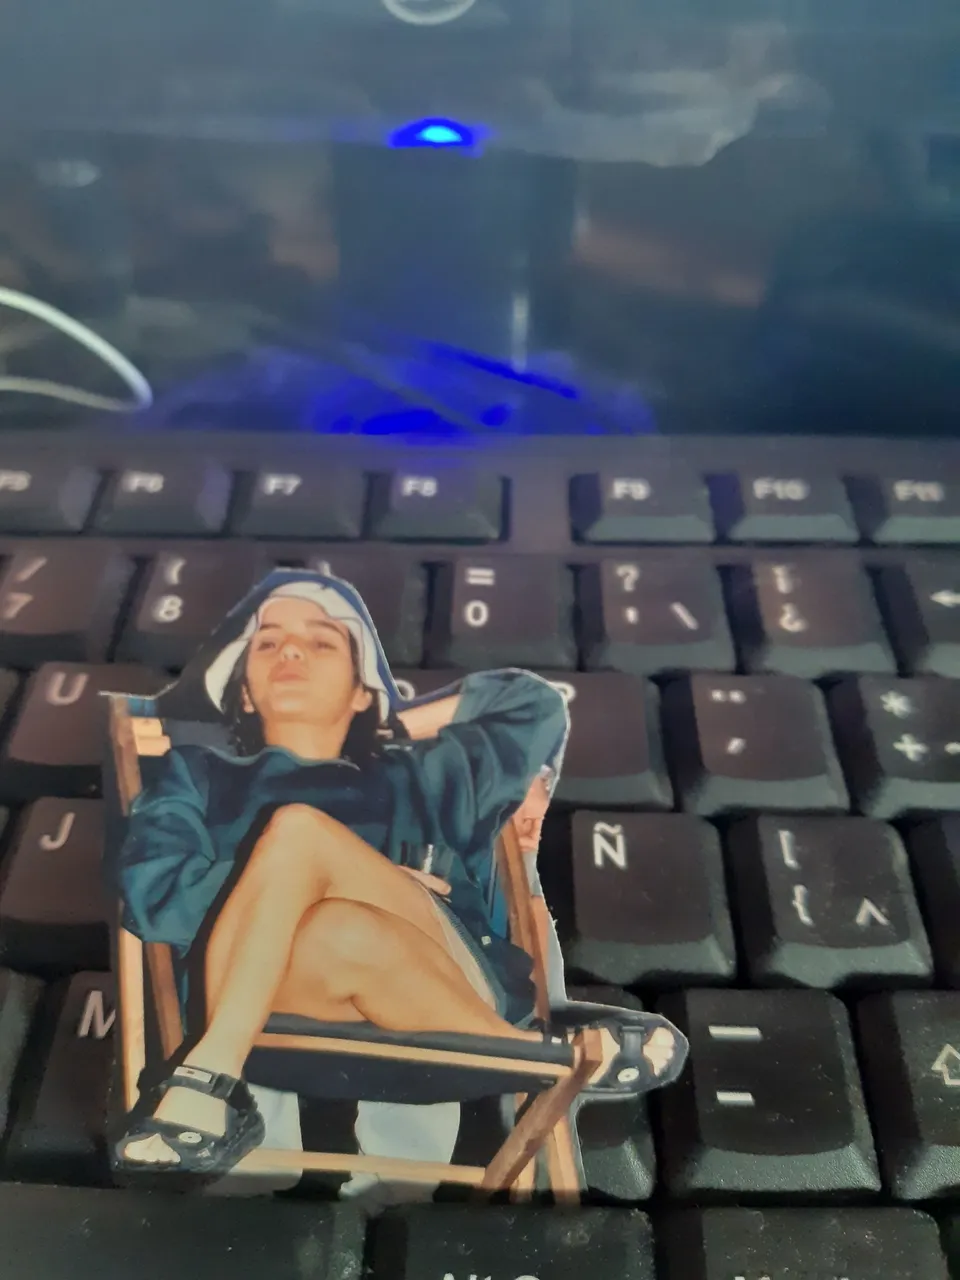 Fotografía analógica, recortada y colocada sobre el teclado de mi PC / Analog photography, cropped and placed on my PC keyboard